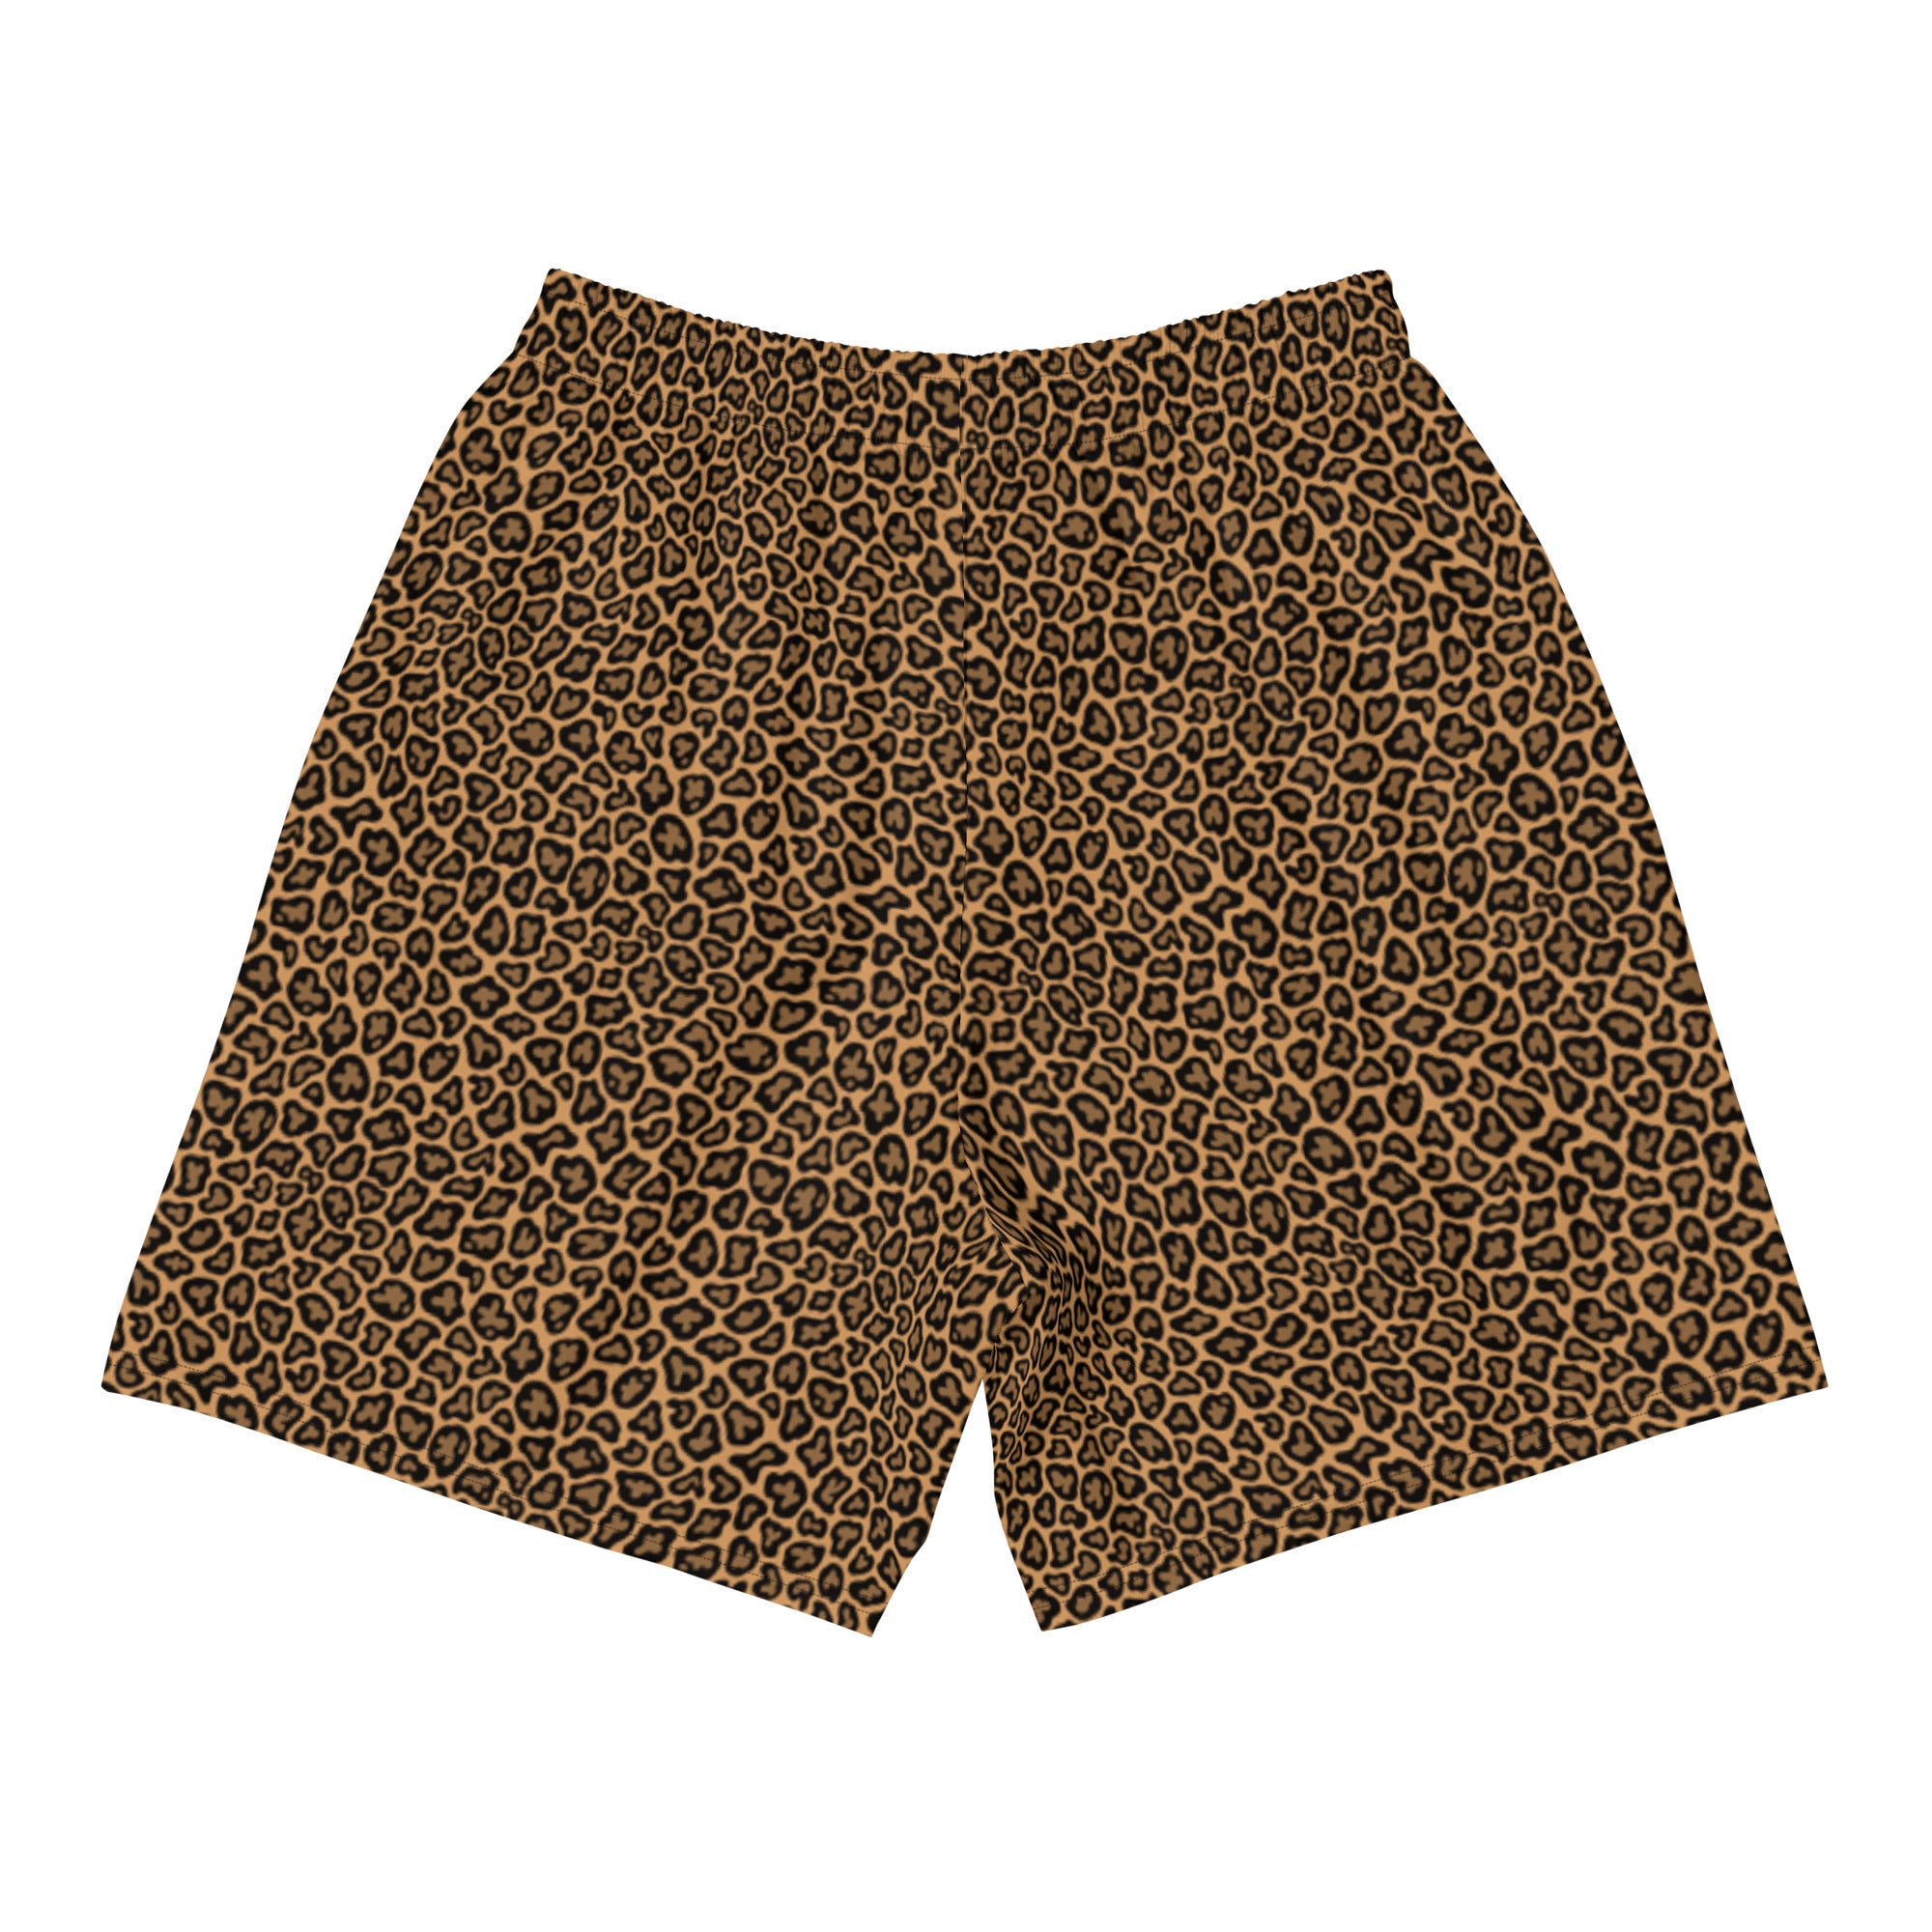 Ballboy Elite Cheetah Print Athletic Shorts – BallboyElite